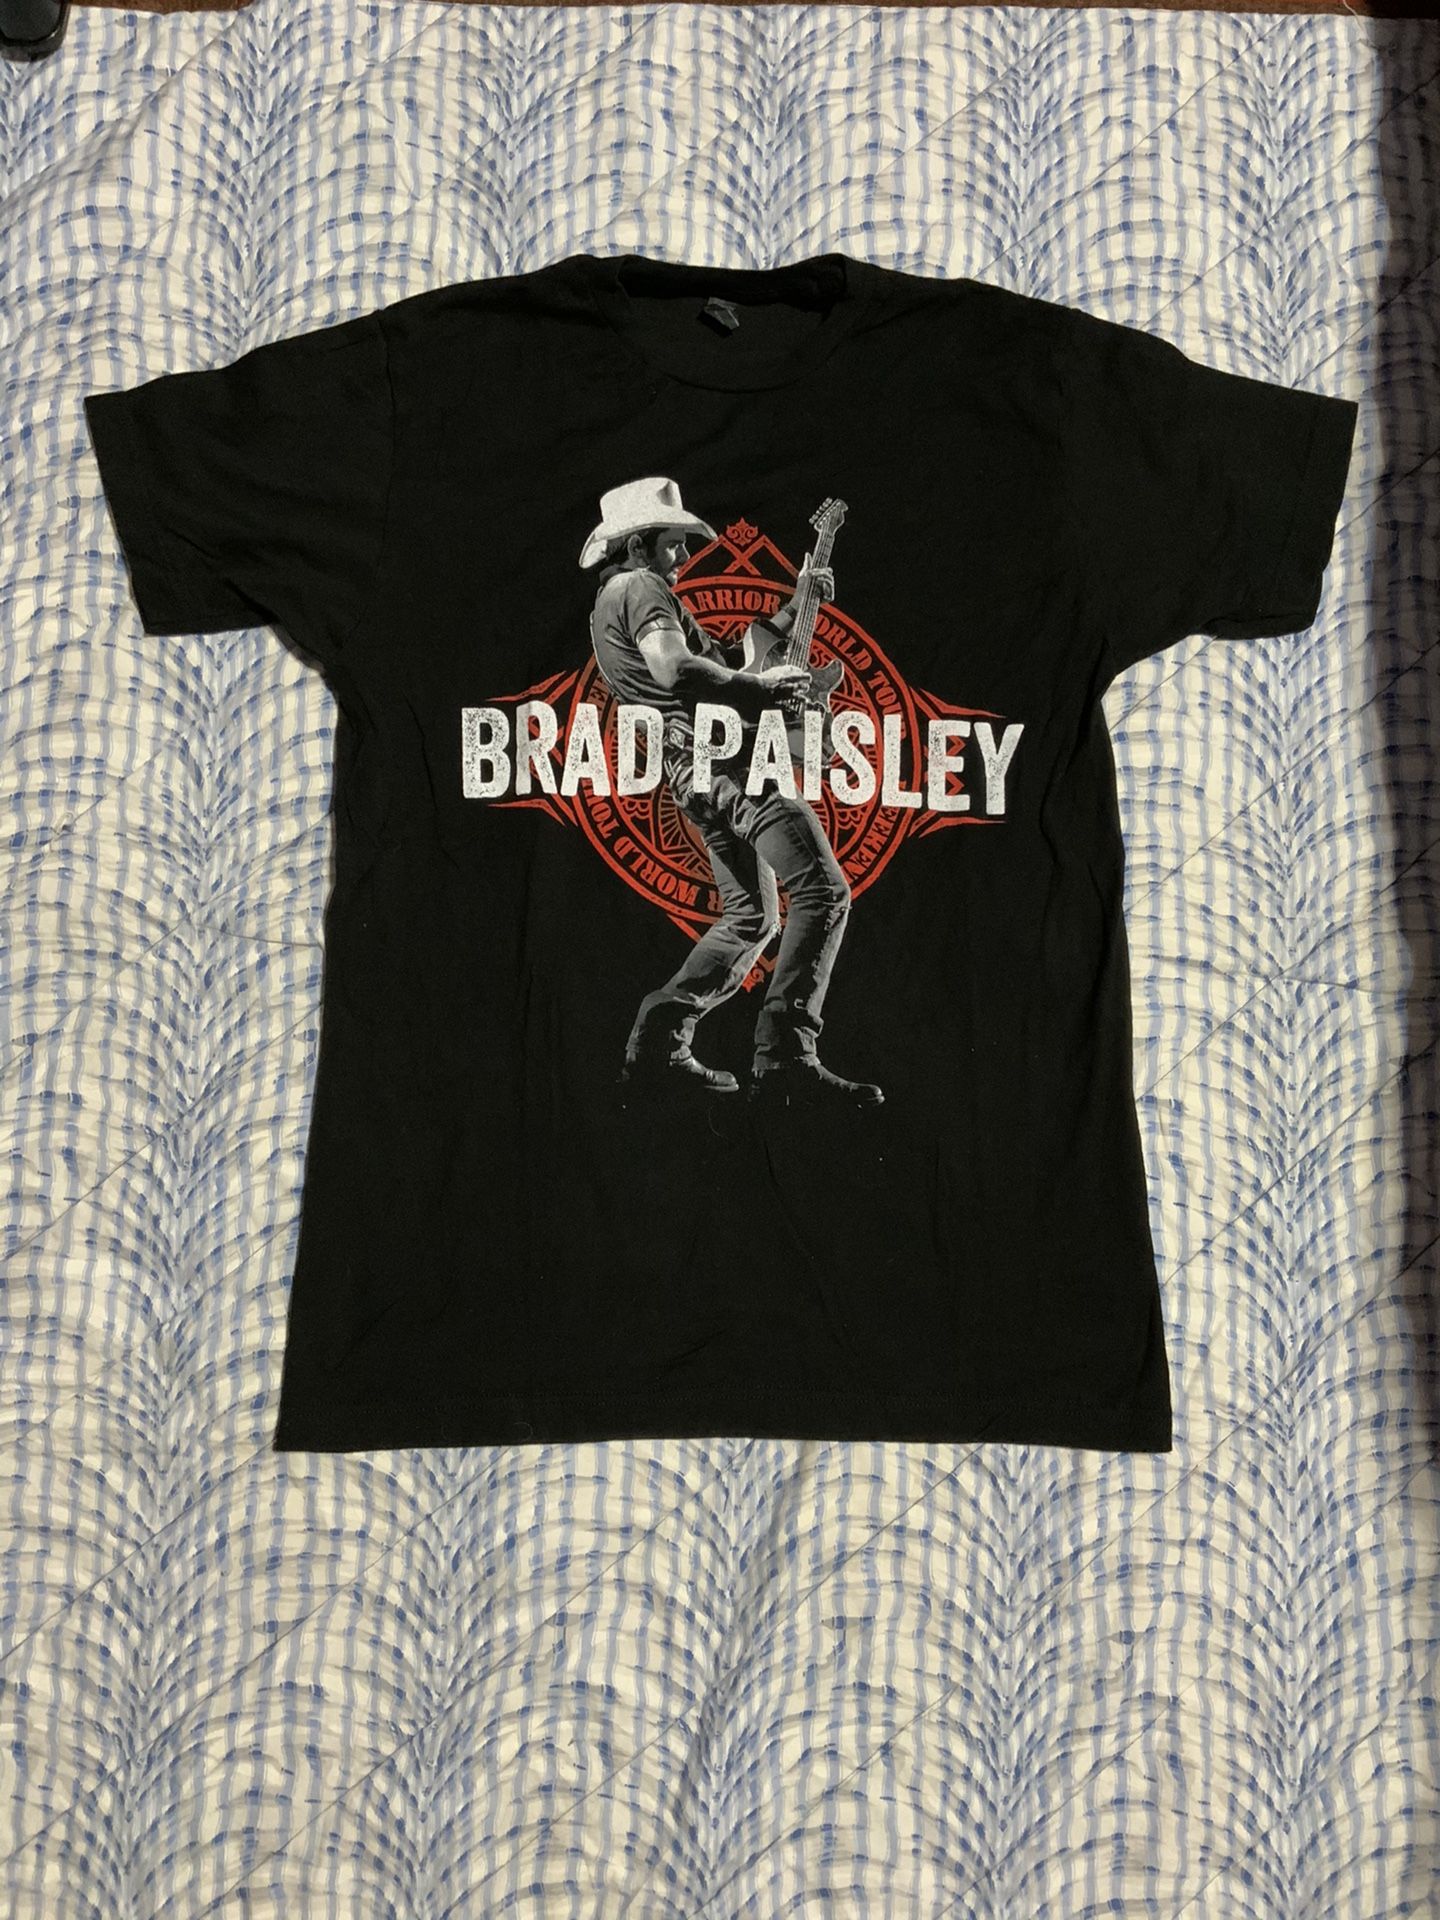 Brad paisley shirt